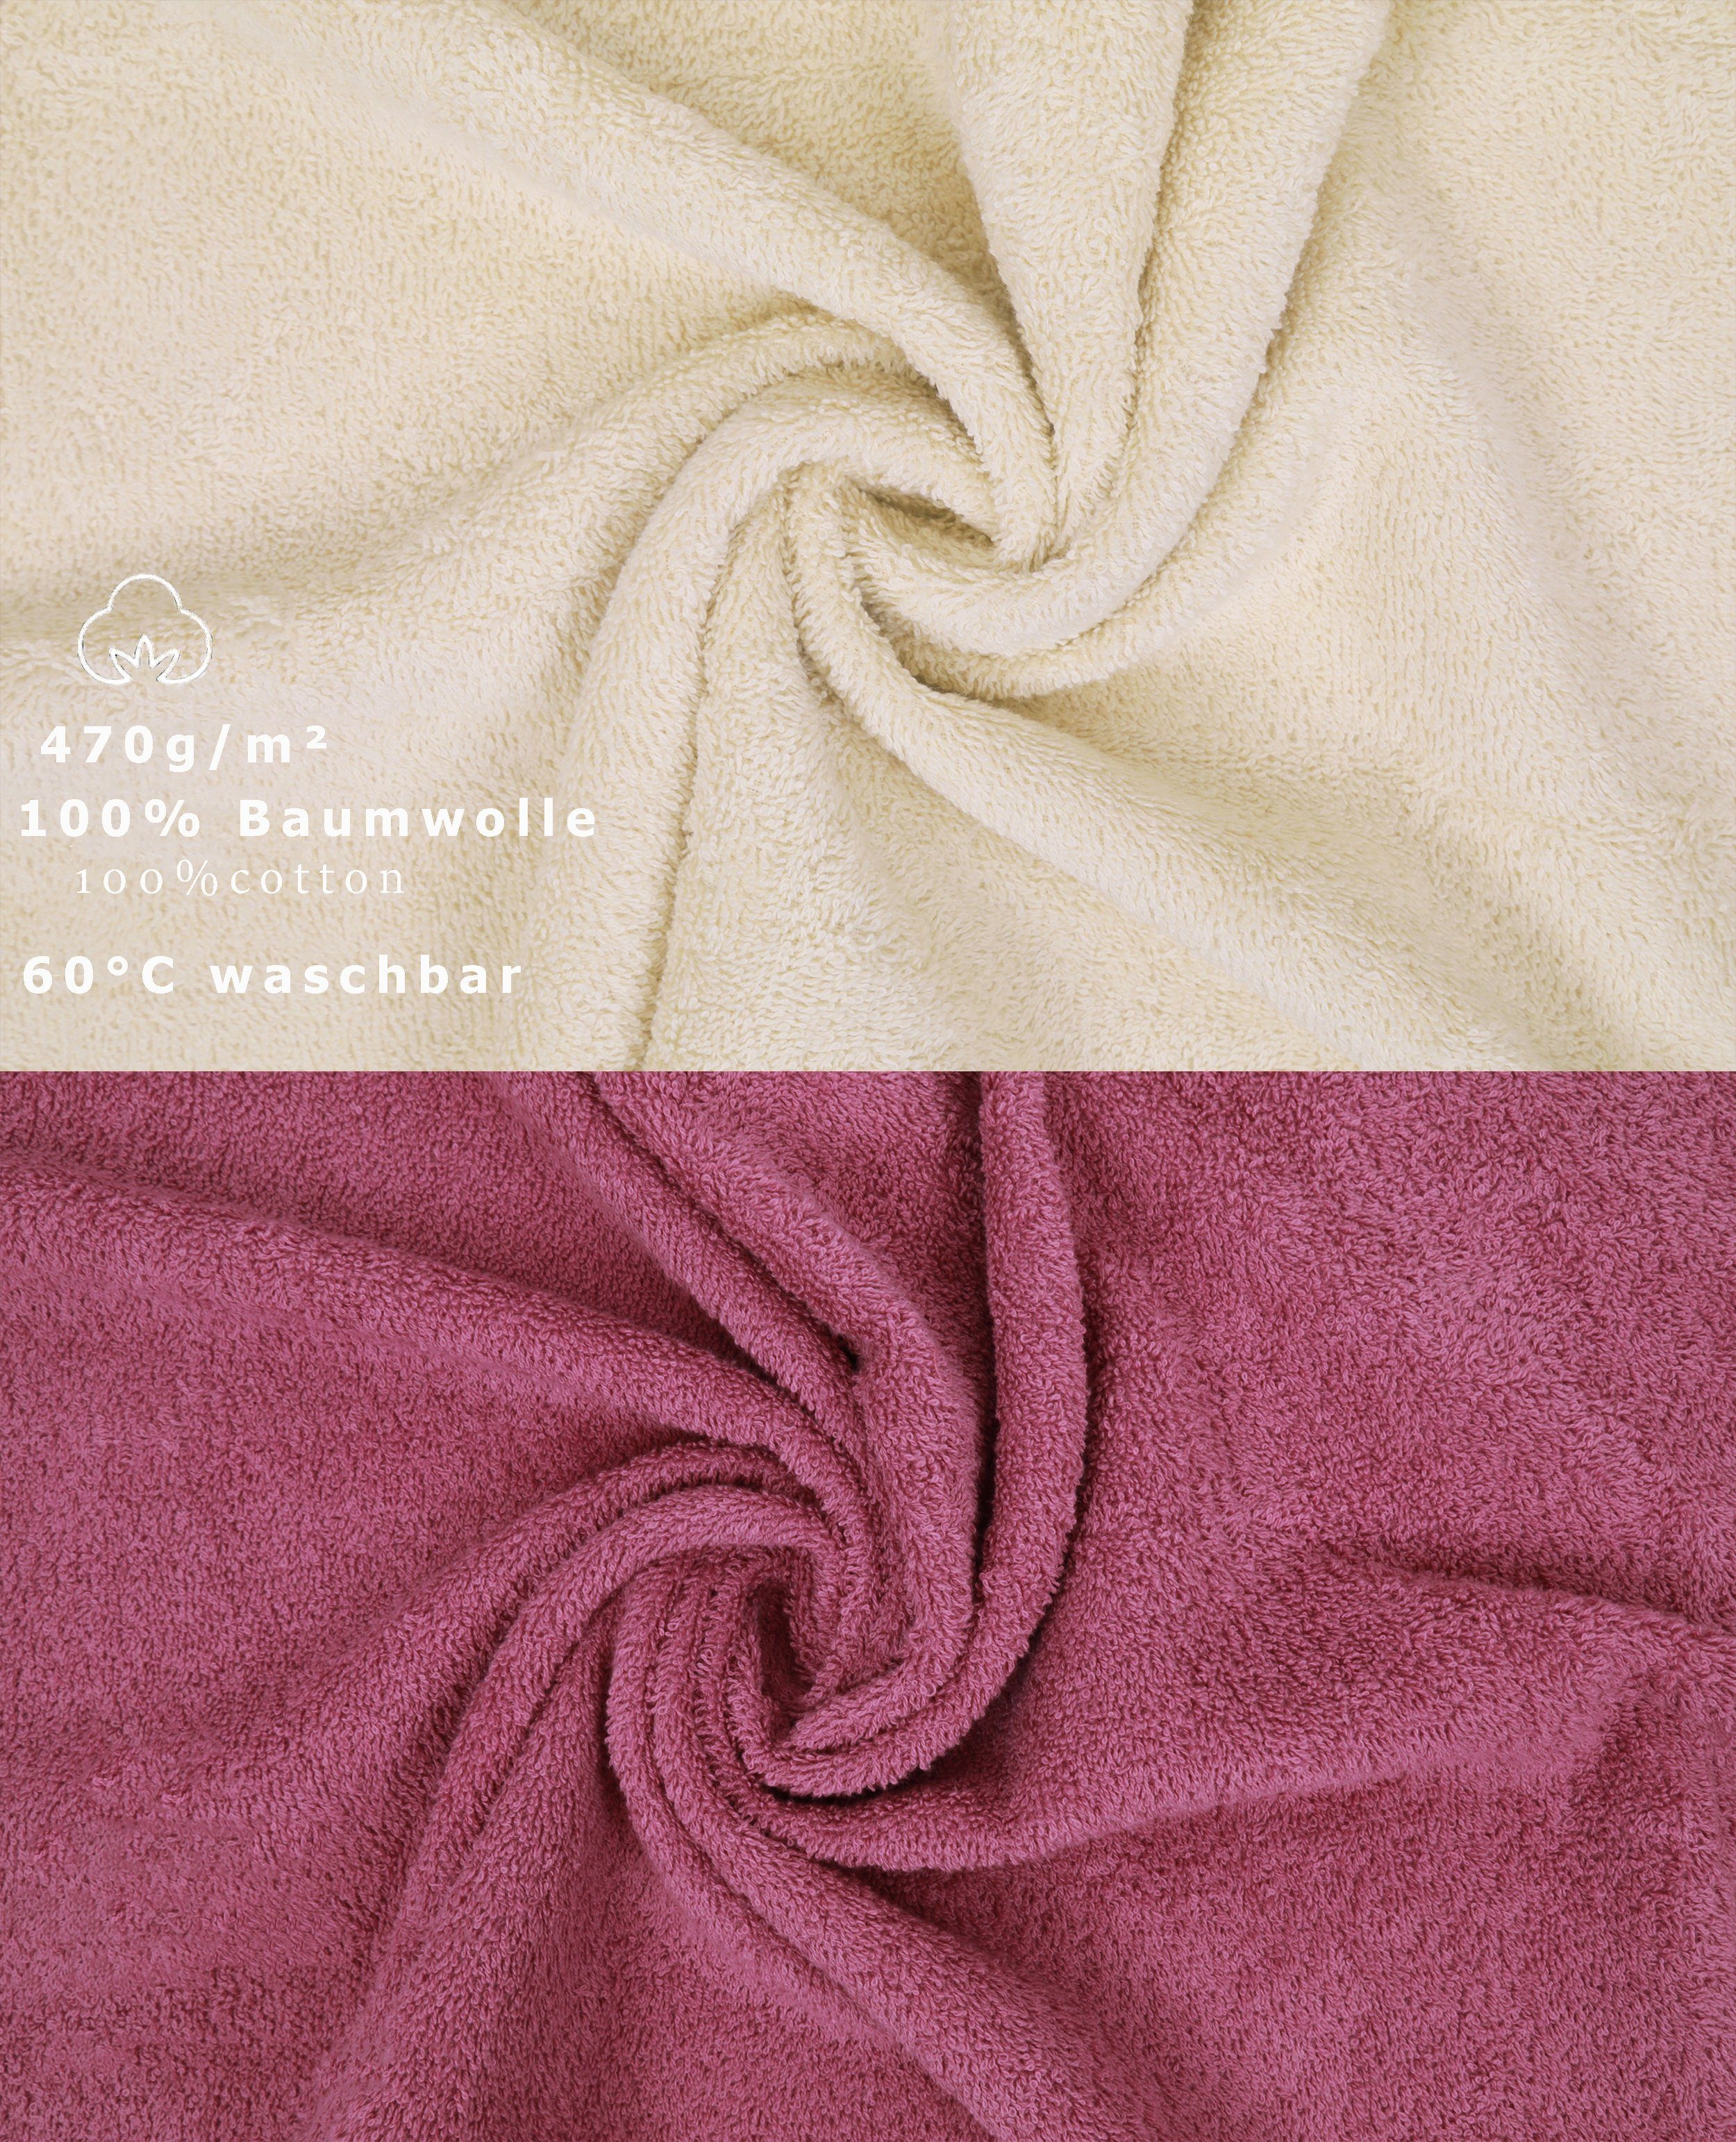 Baumwolle, Set Set 100% Farbe Handtuch Premium Handtuch Sand/Beere, 12-tlg. Betz (12-tlg)